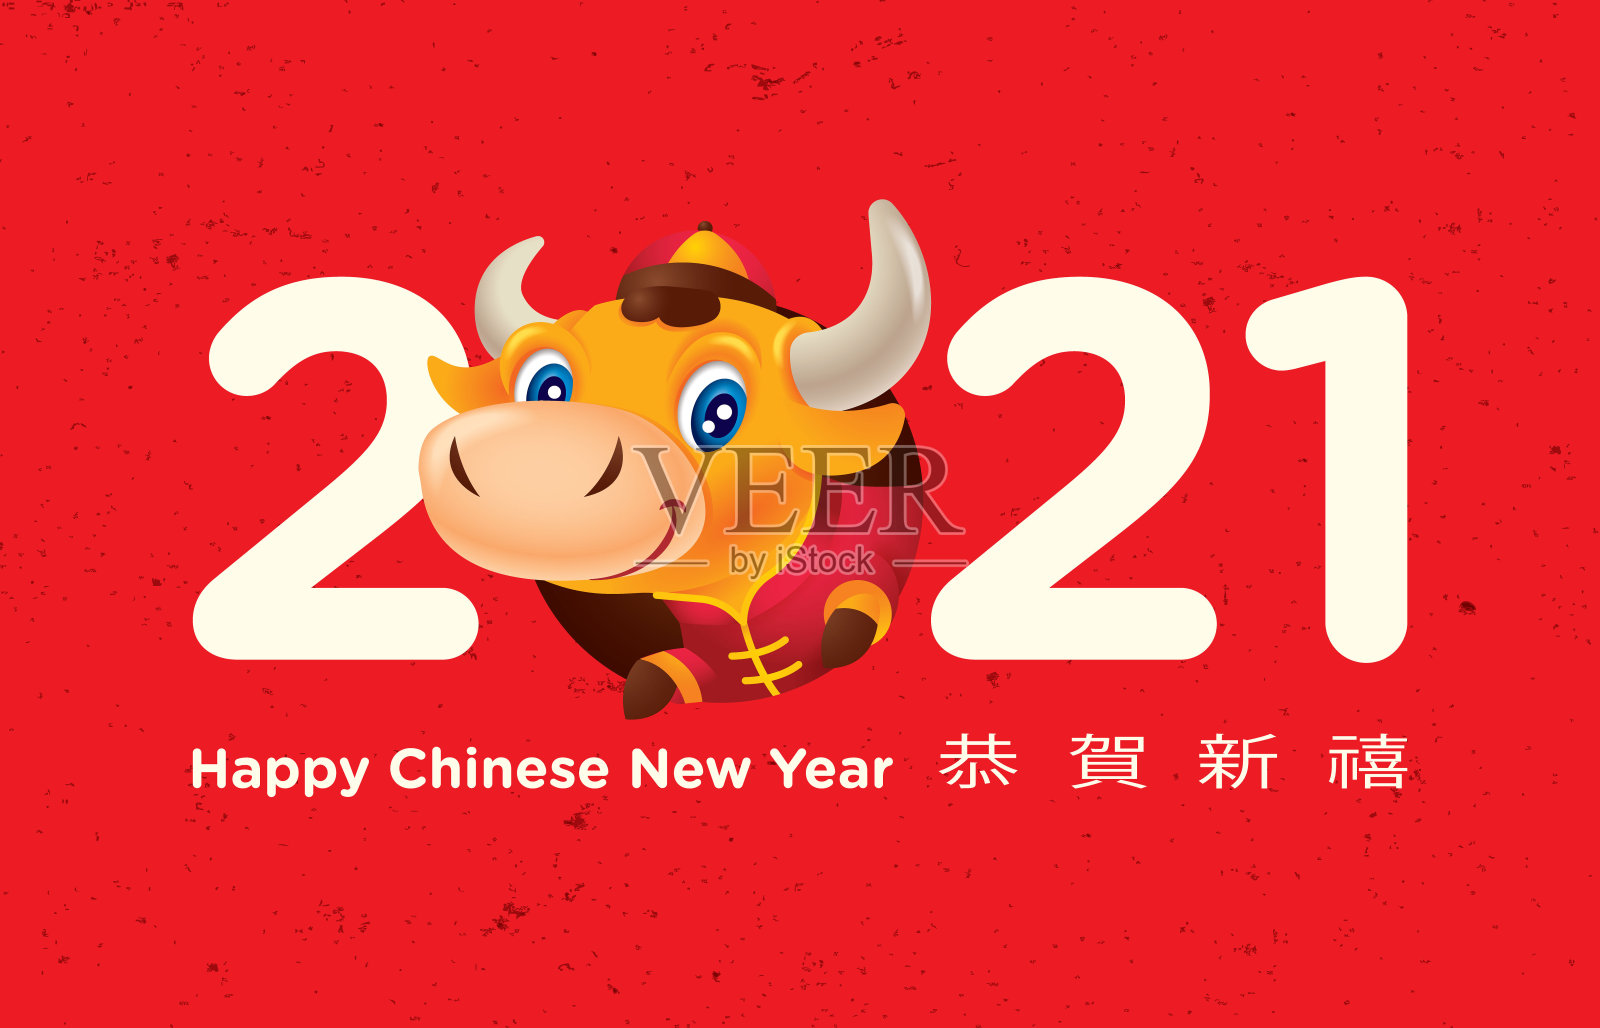 2021年春节快乐。可爱的小奶牛从2021年的大字里出来了。插画图片素材